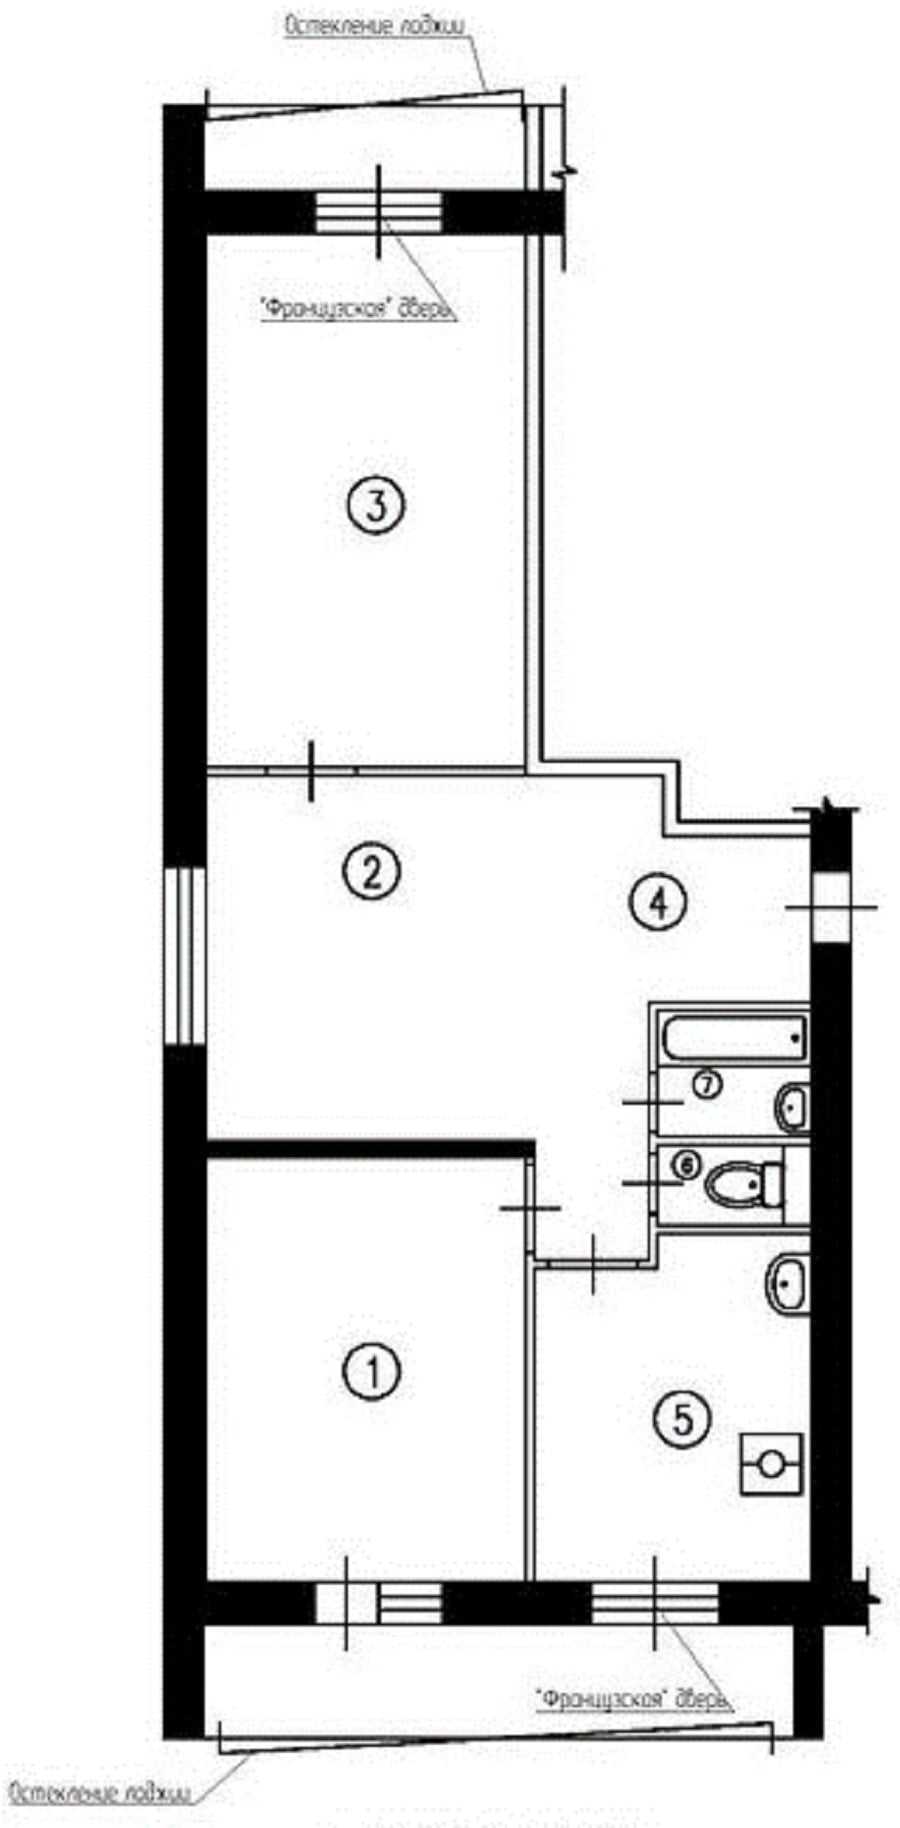 И 209А перепланировка трешки объединение части жилой комнаты с коридором